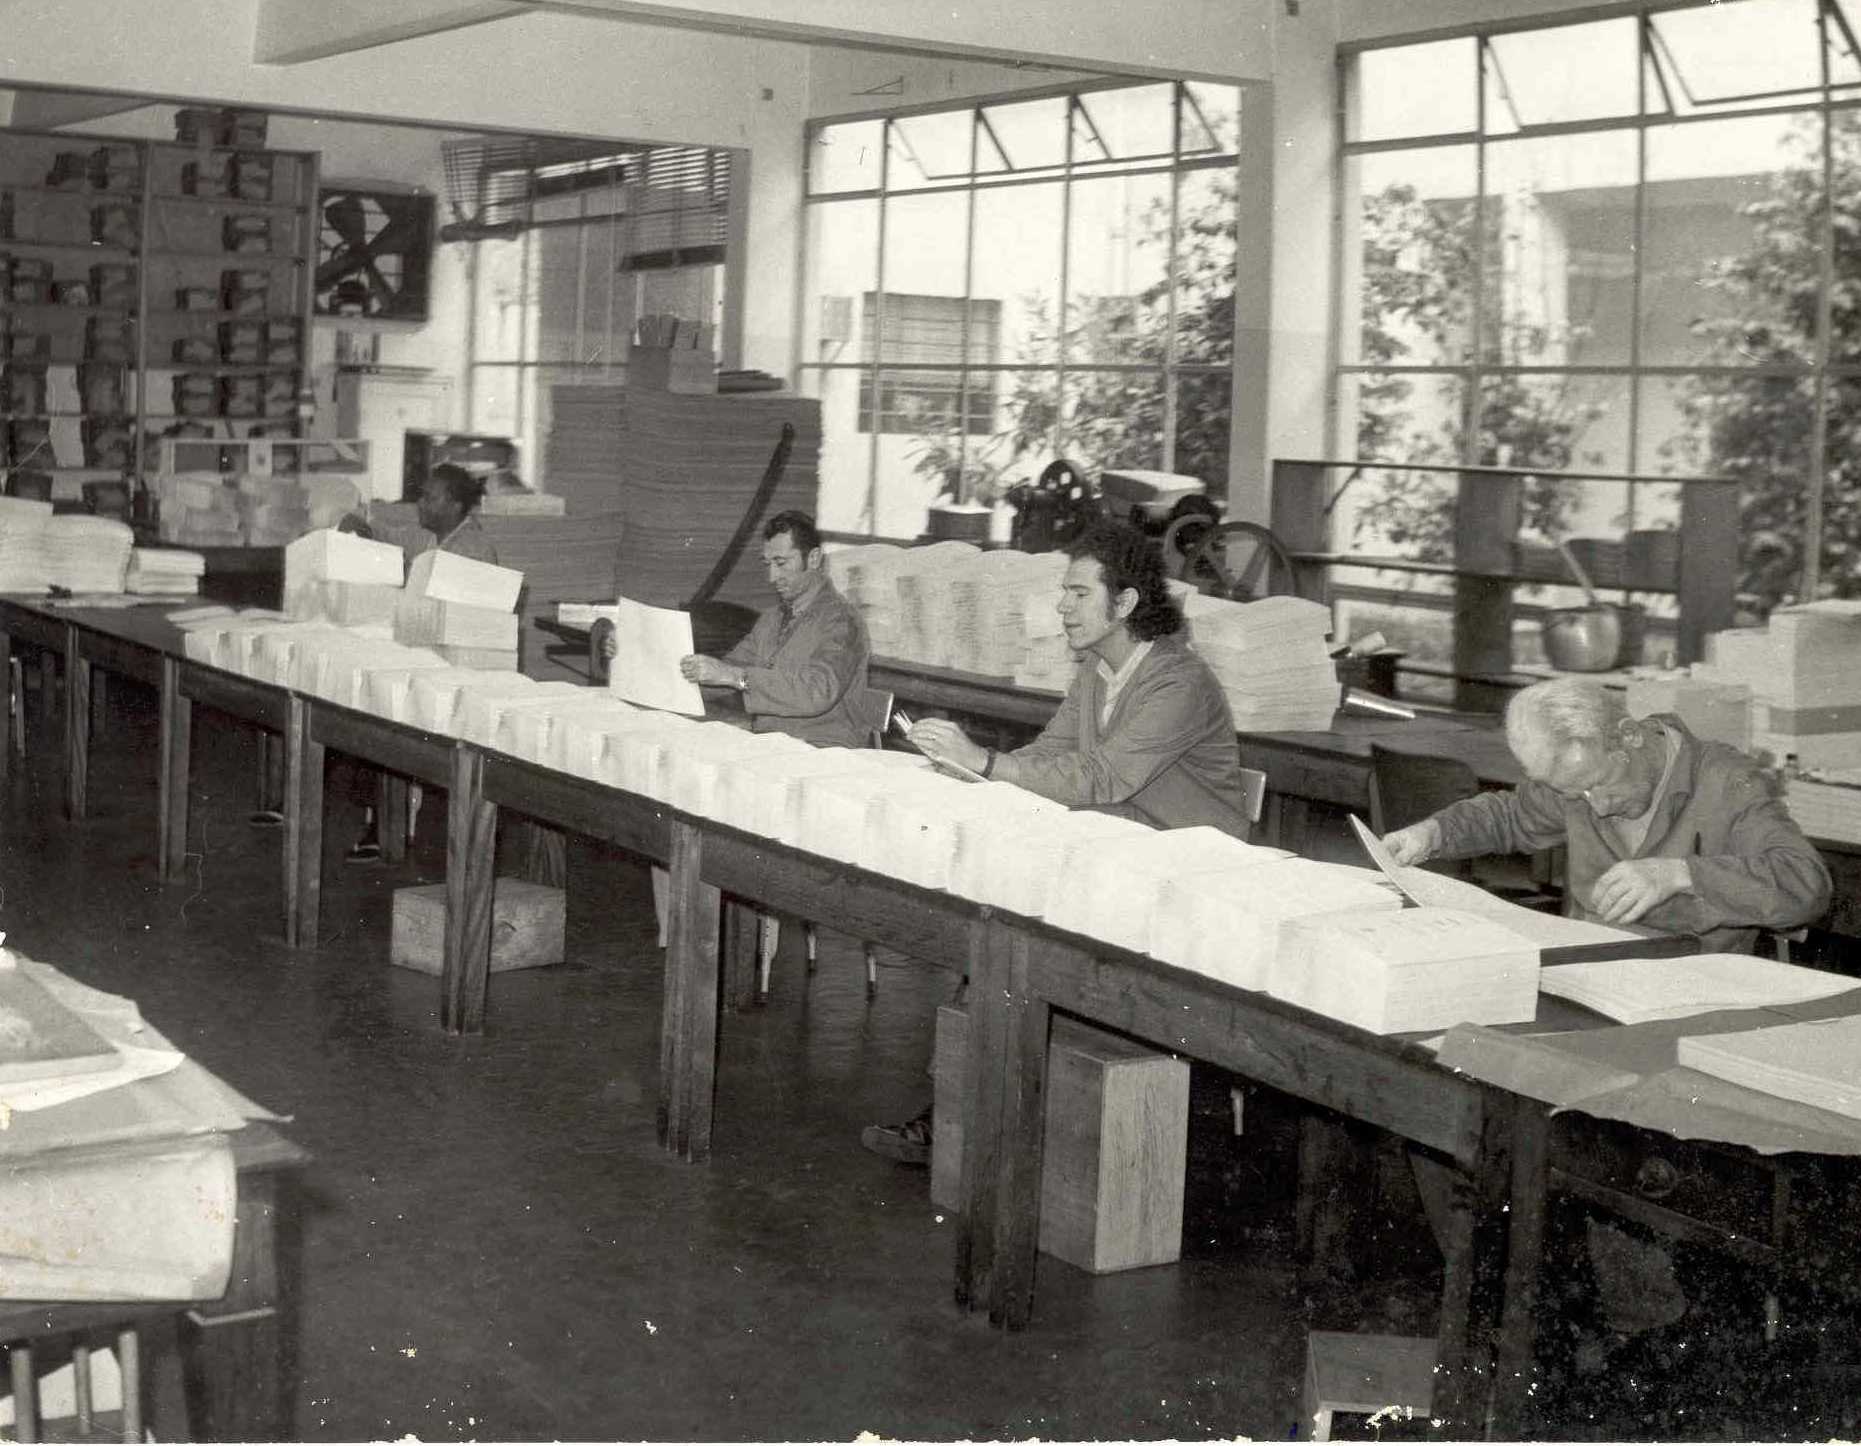 Descrição da imagem: foto em preto e branco de quatro homens manuseando pilhas de papel em branco sobre uma bancada.